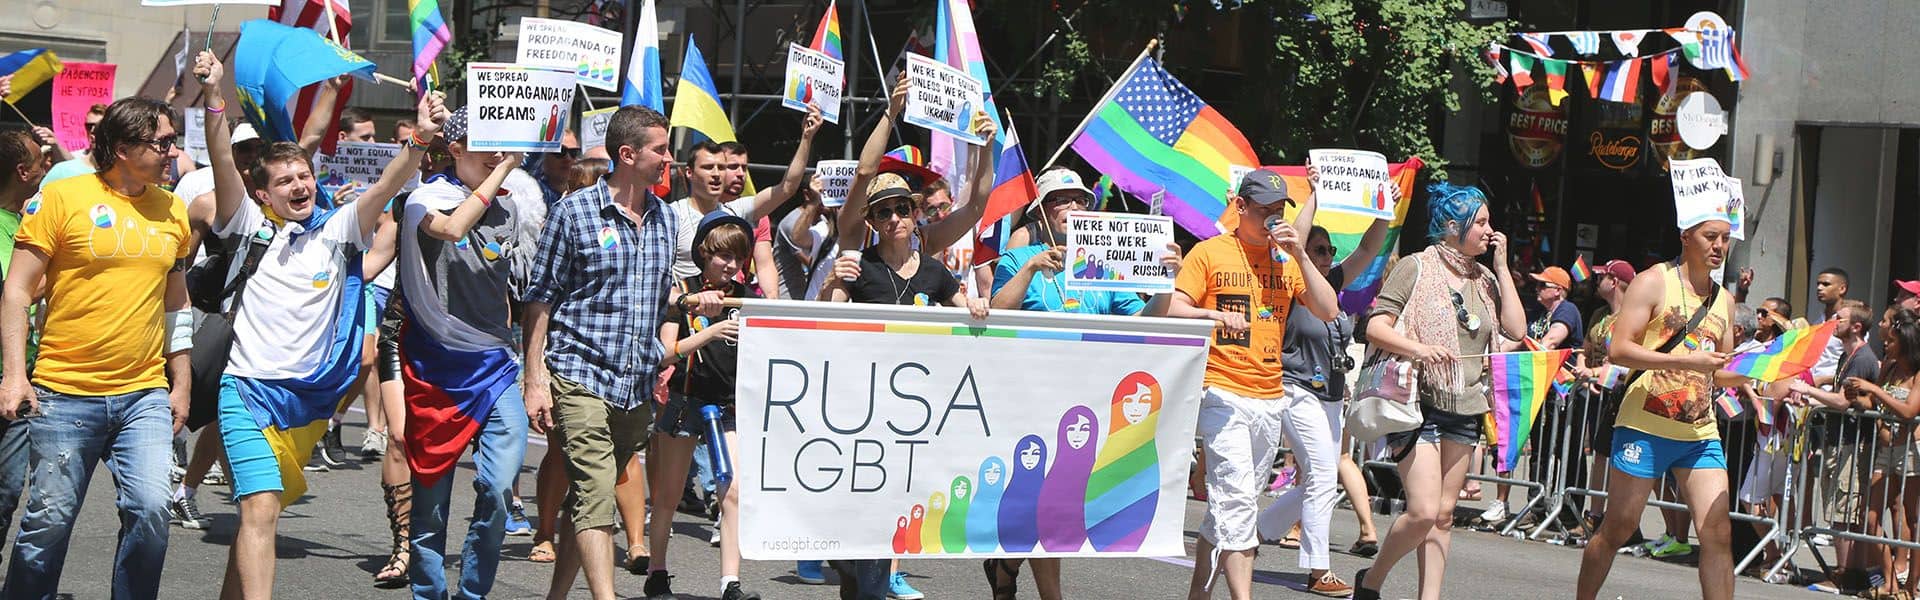 Parlamentarios y parlamentarias oponiéndose a reformas legislativas regresivas dirigidas contra las personas LGBTI